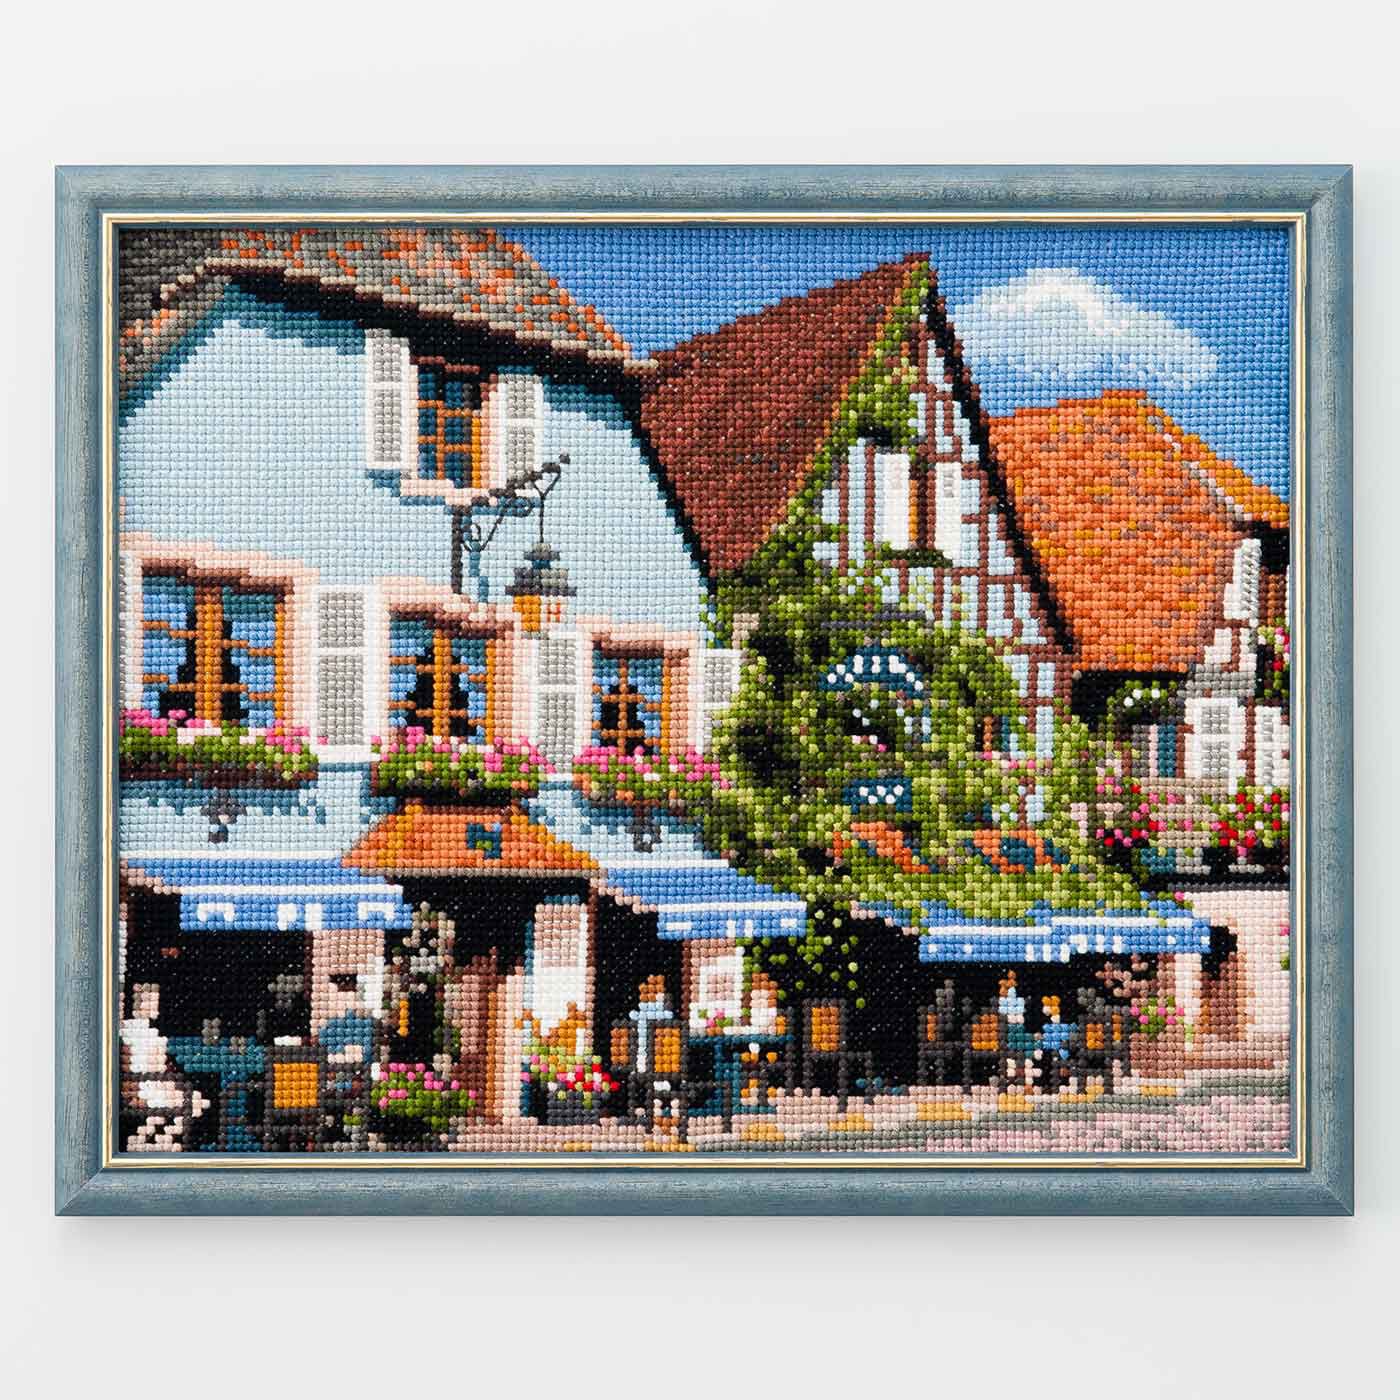 Couturier special|絵本のように美しい　フランスの風景　アルザス地方のカフェクロスステッチキット|フレームはセットに含まれません。こちらの写真では、別売りのフレームを使用しています。